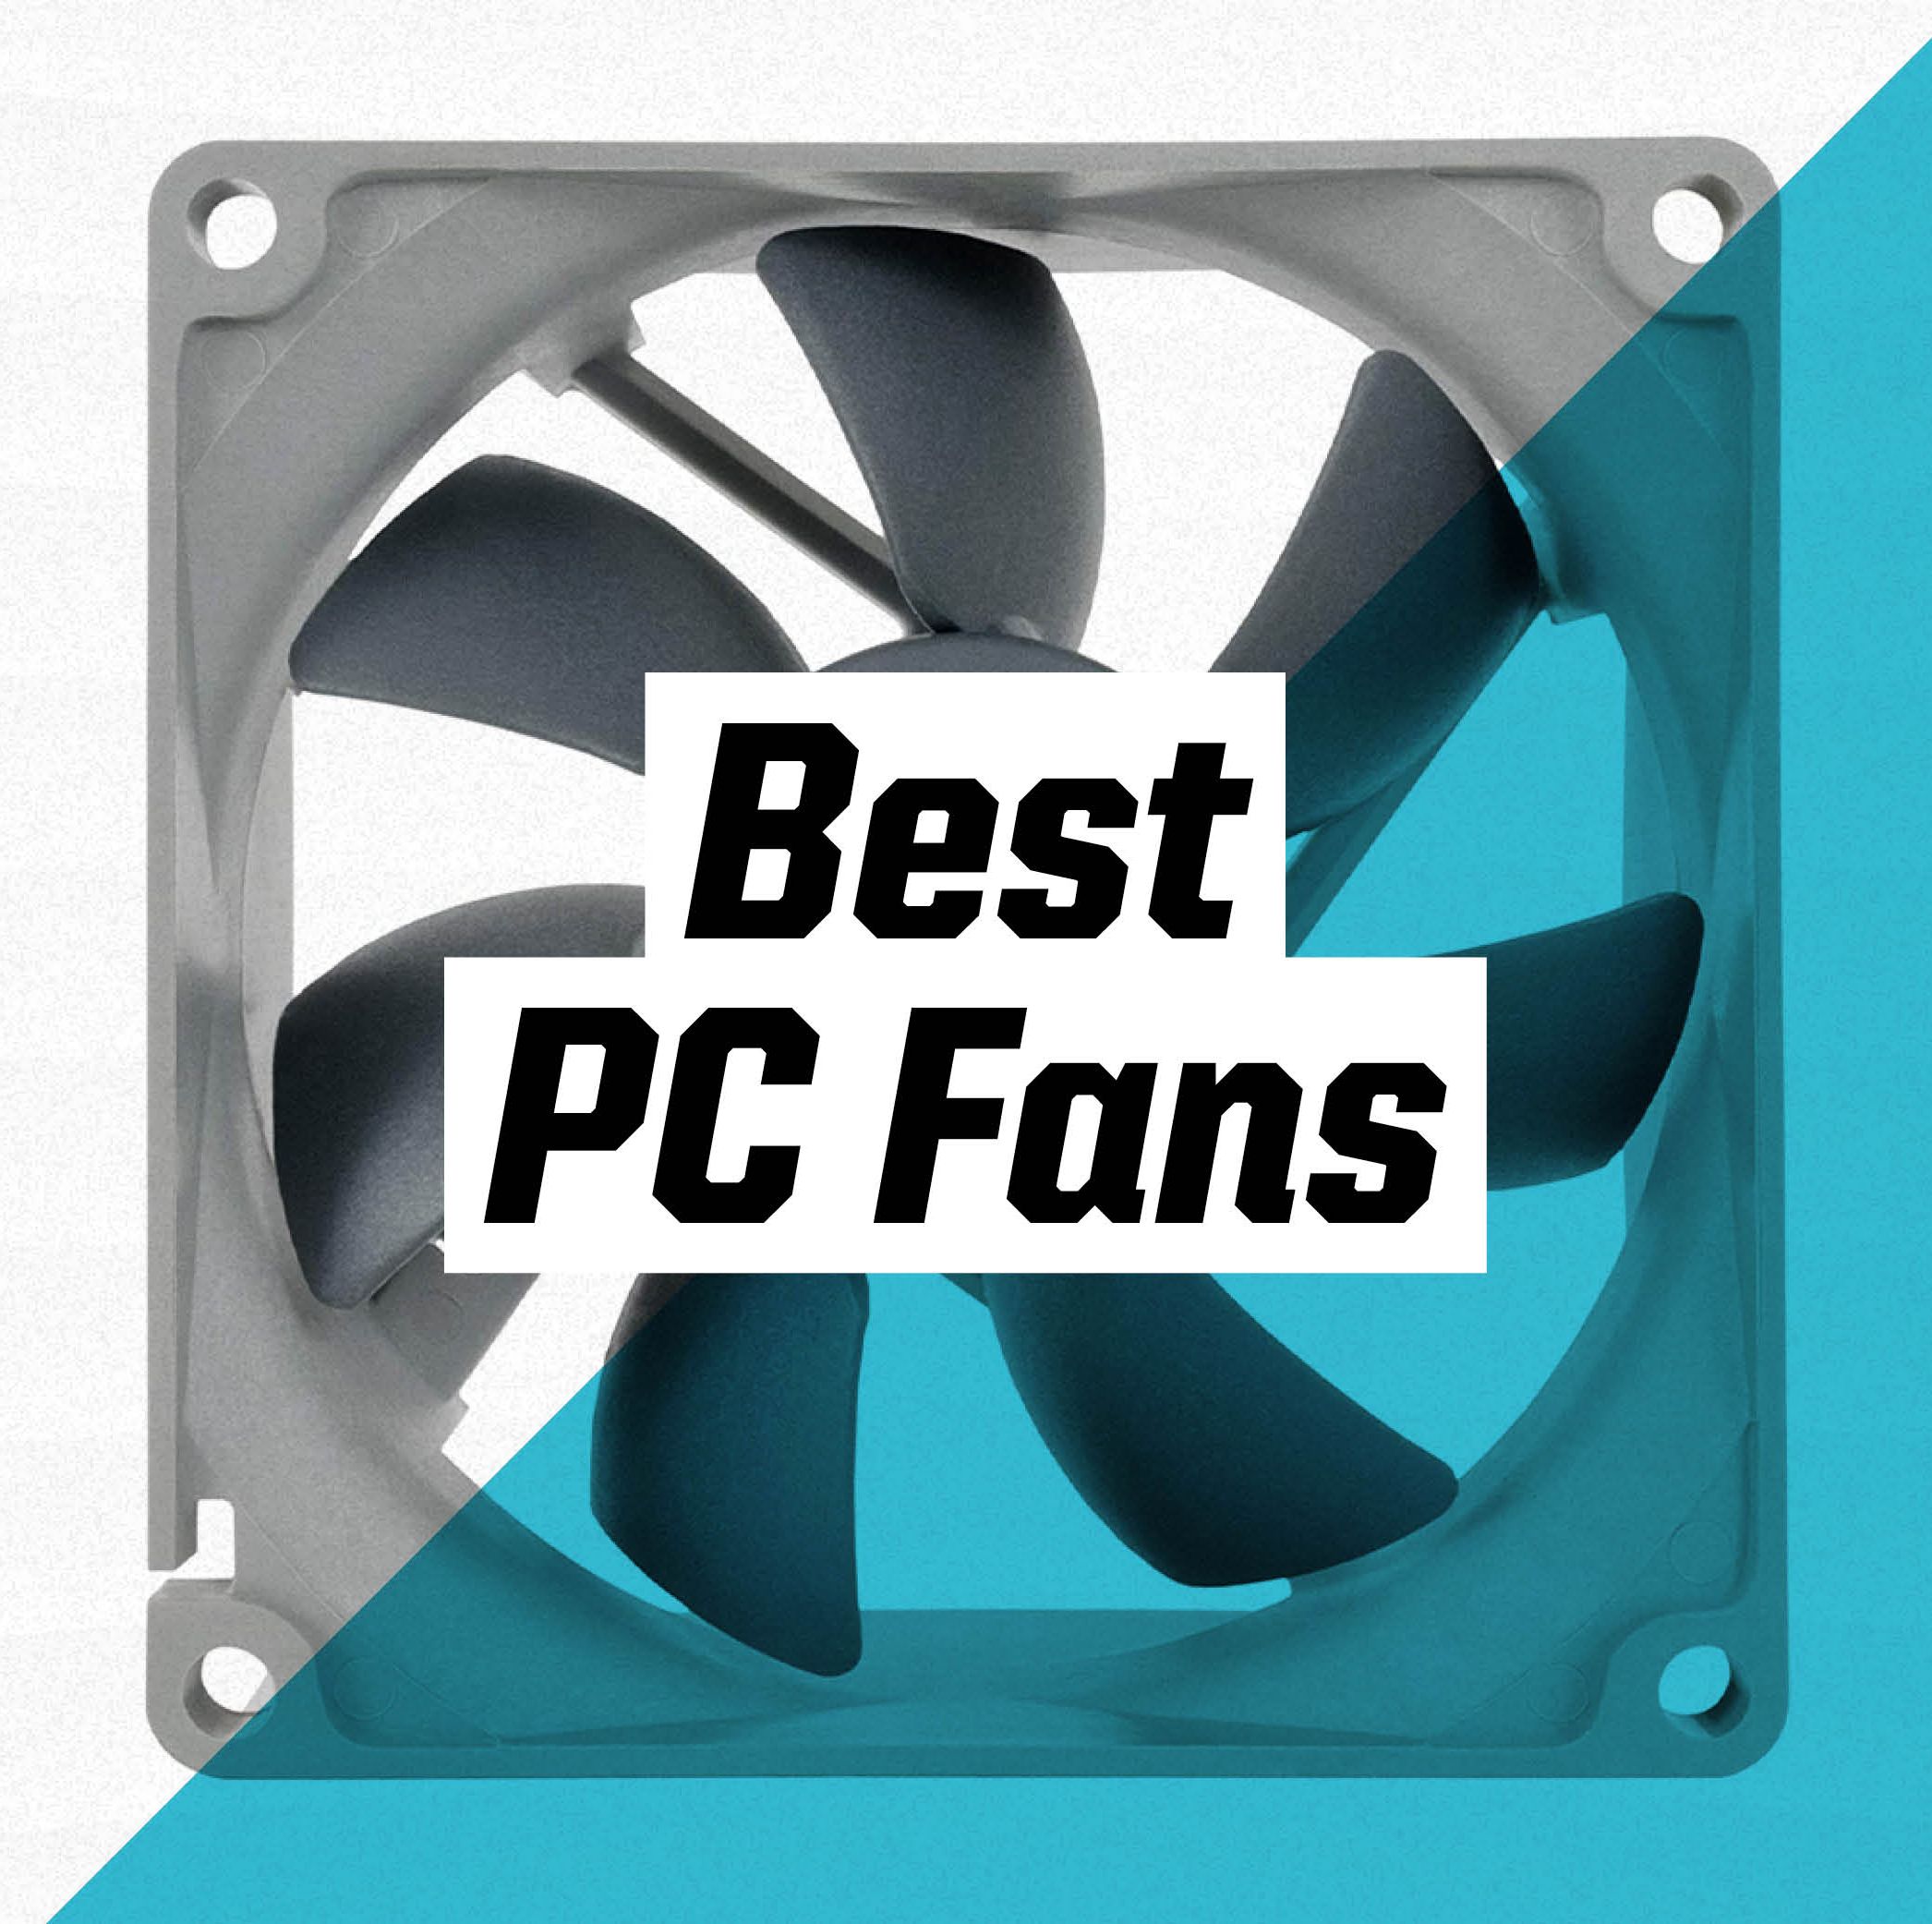 The 6 Best PC Fans